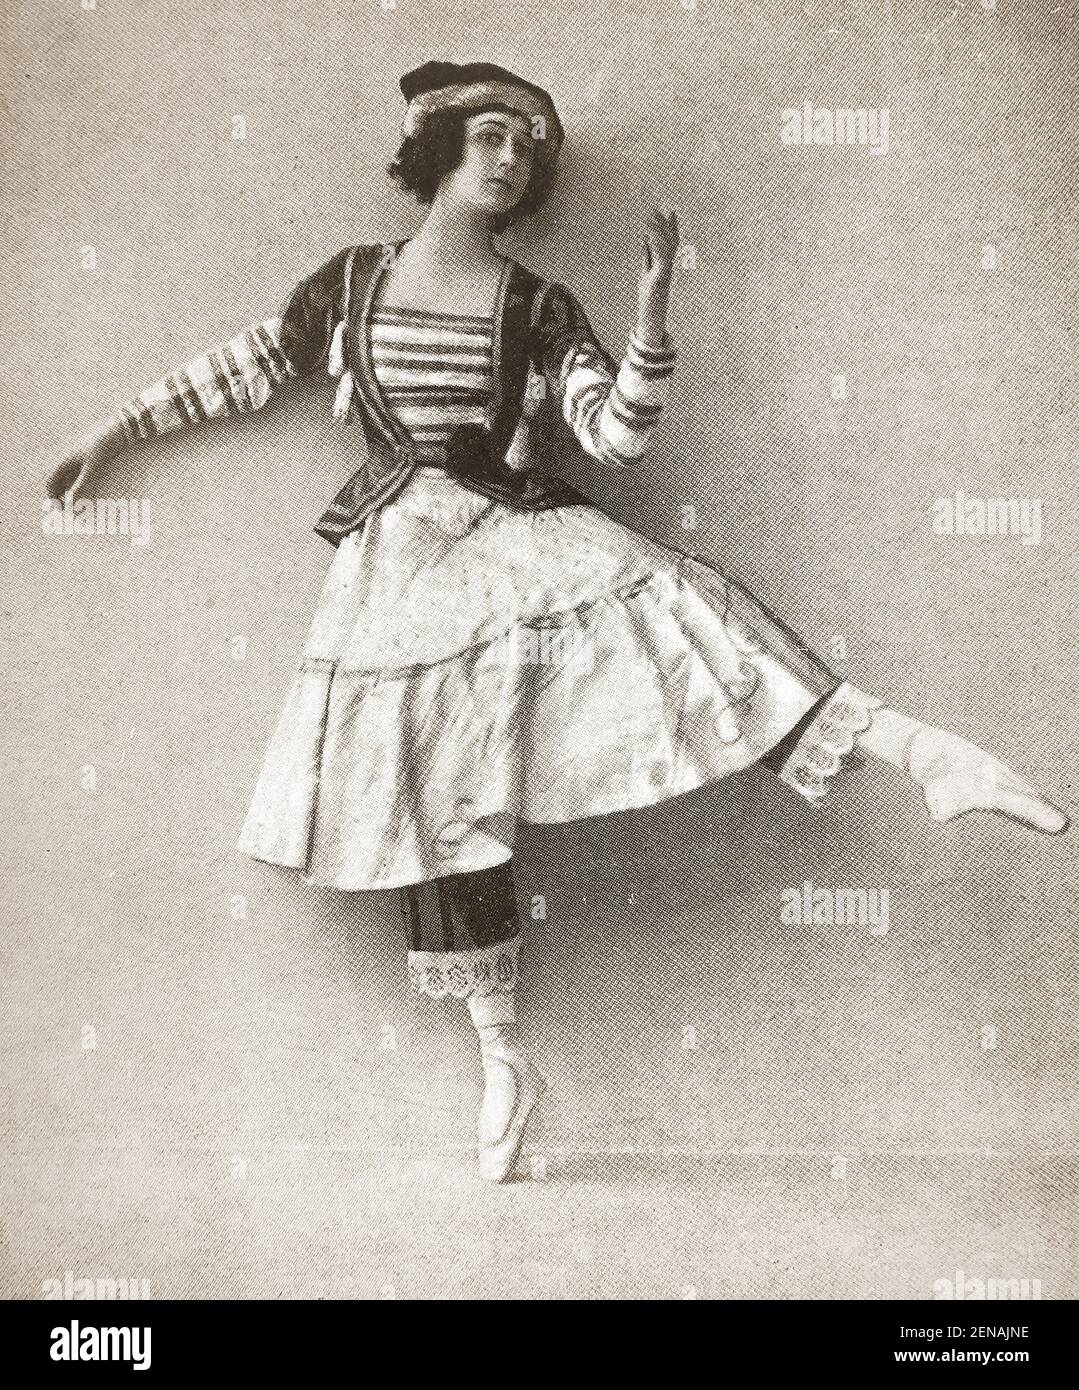 Prima russe Ballerina Thamar Karsavina aka Tamara Platonovna Karsavina( 1885 – 1978) dans 'Petrouchka' (alias Petrushka) dans 'Petrouchka' (alias Petrushka) écrit par Igor Stravinsky ). Elle a été artiste principale du Ballet russe impérial et plus tard des Ballets Russes. En Grande-Bretagne, elle participe à la création du Ballet royal et est membre fondateur de l'Académie royale de danse. Son second mari était le diplomate britannique Henry James Bruce (1880-1951), père de son fils Nikita Banque D'Images